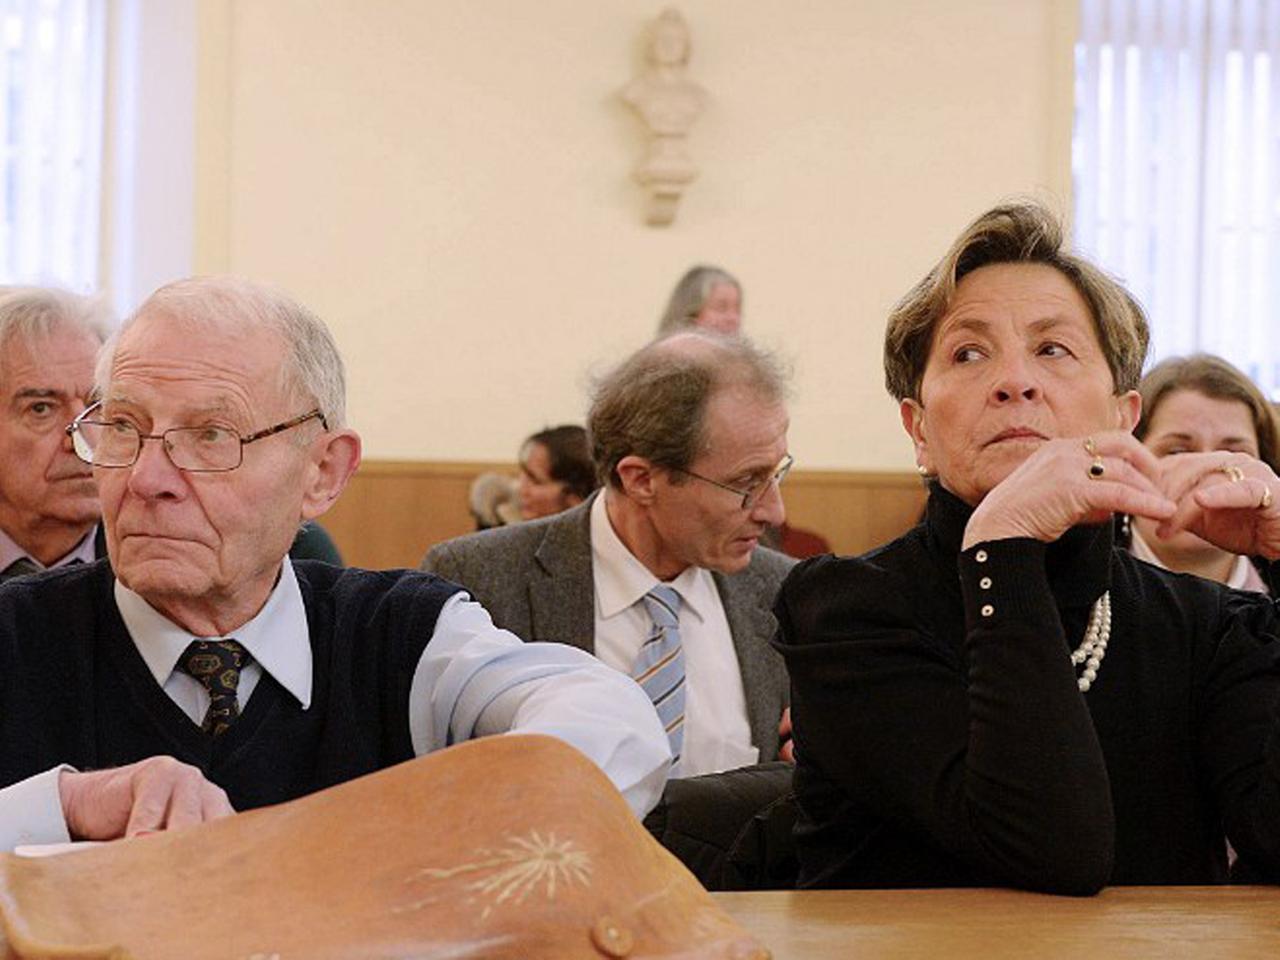 Die Eltern von Vincent Lambert sitzen in einem Gerichtssaal und schauen nach links, in Richtung des Richter.